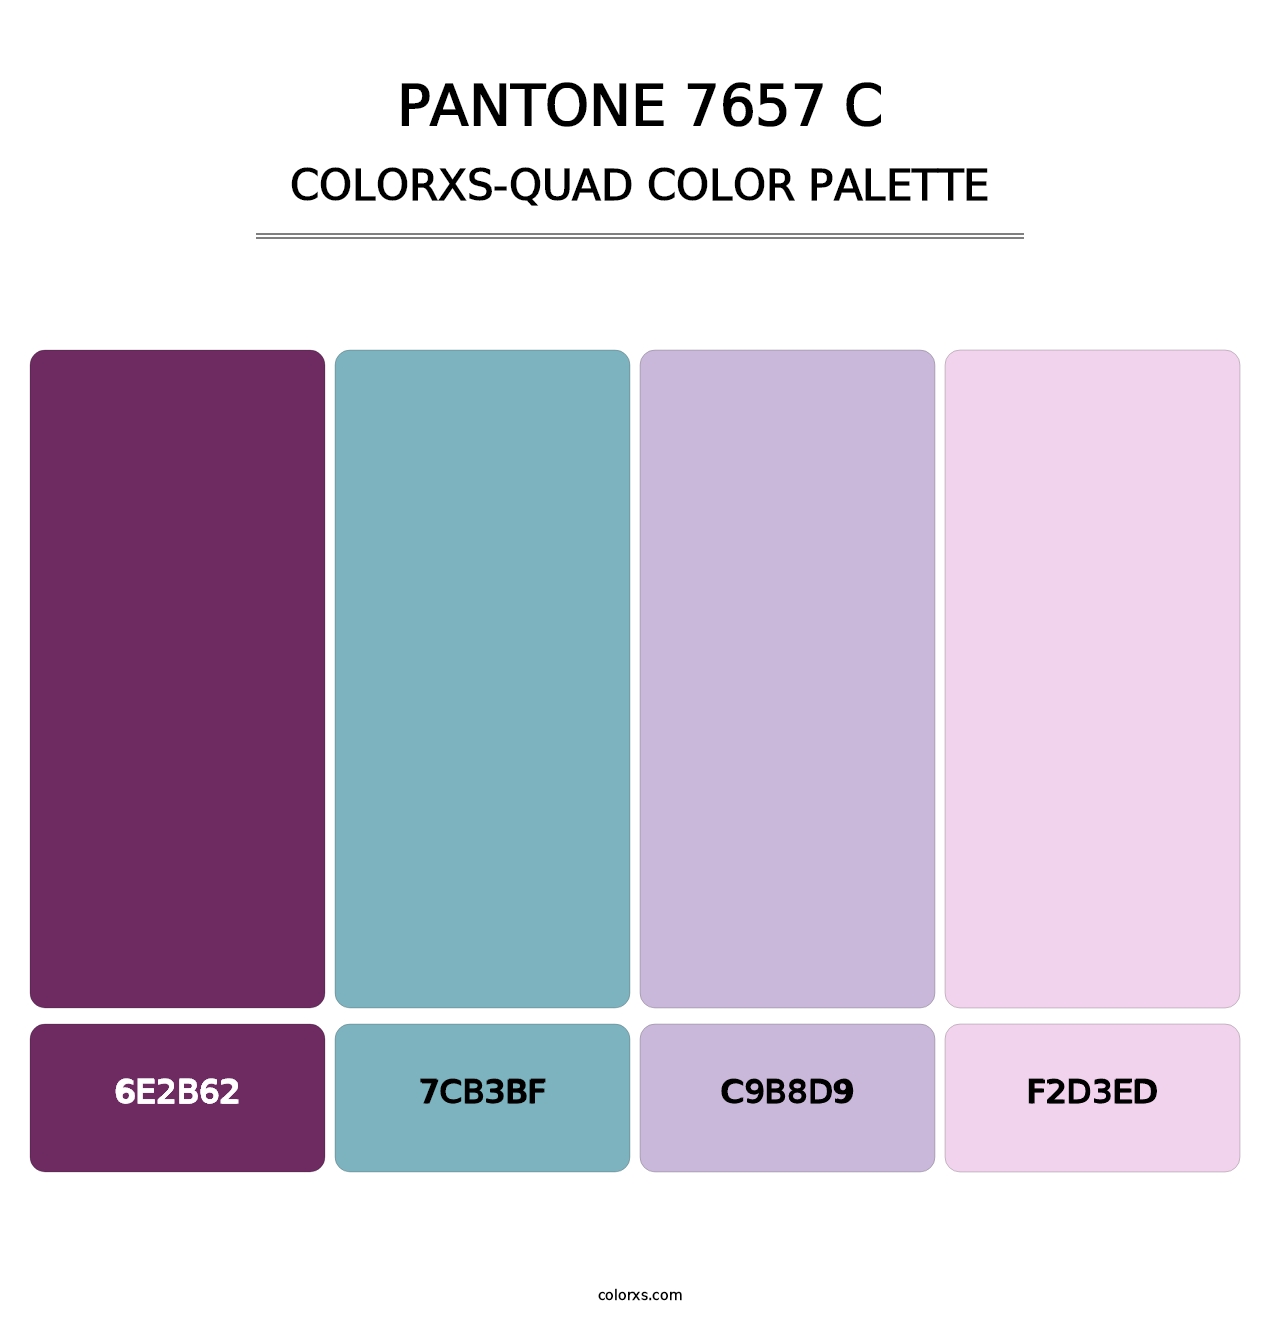 PANTONE 7657 C - Colorxs Quad Palette